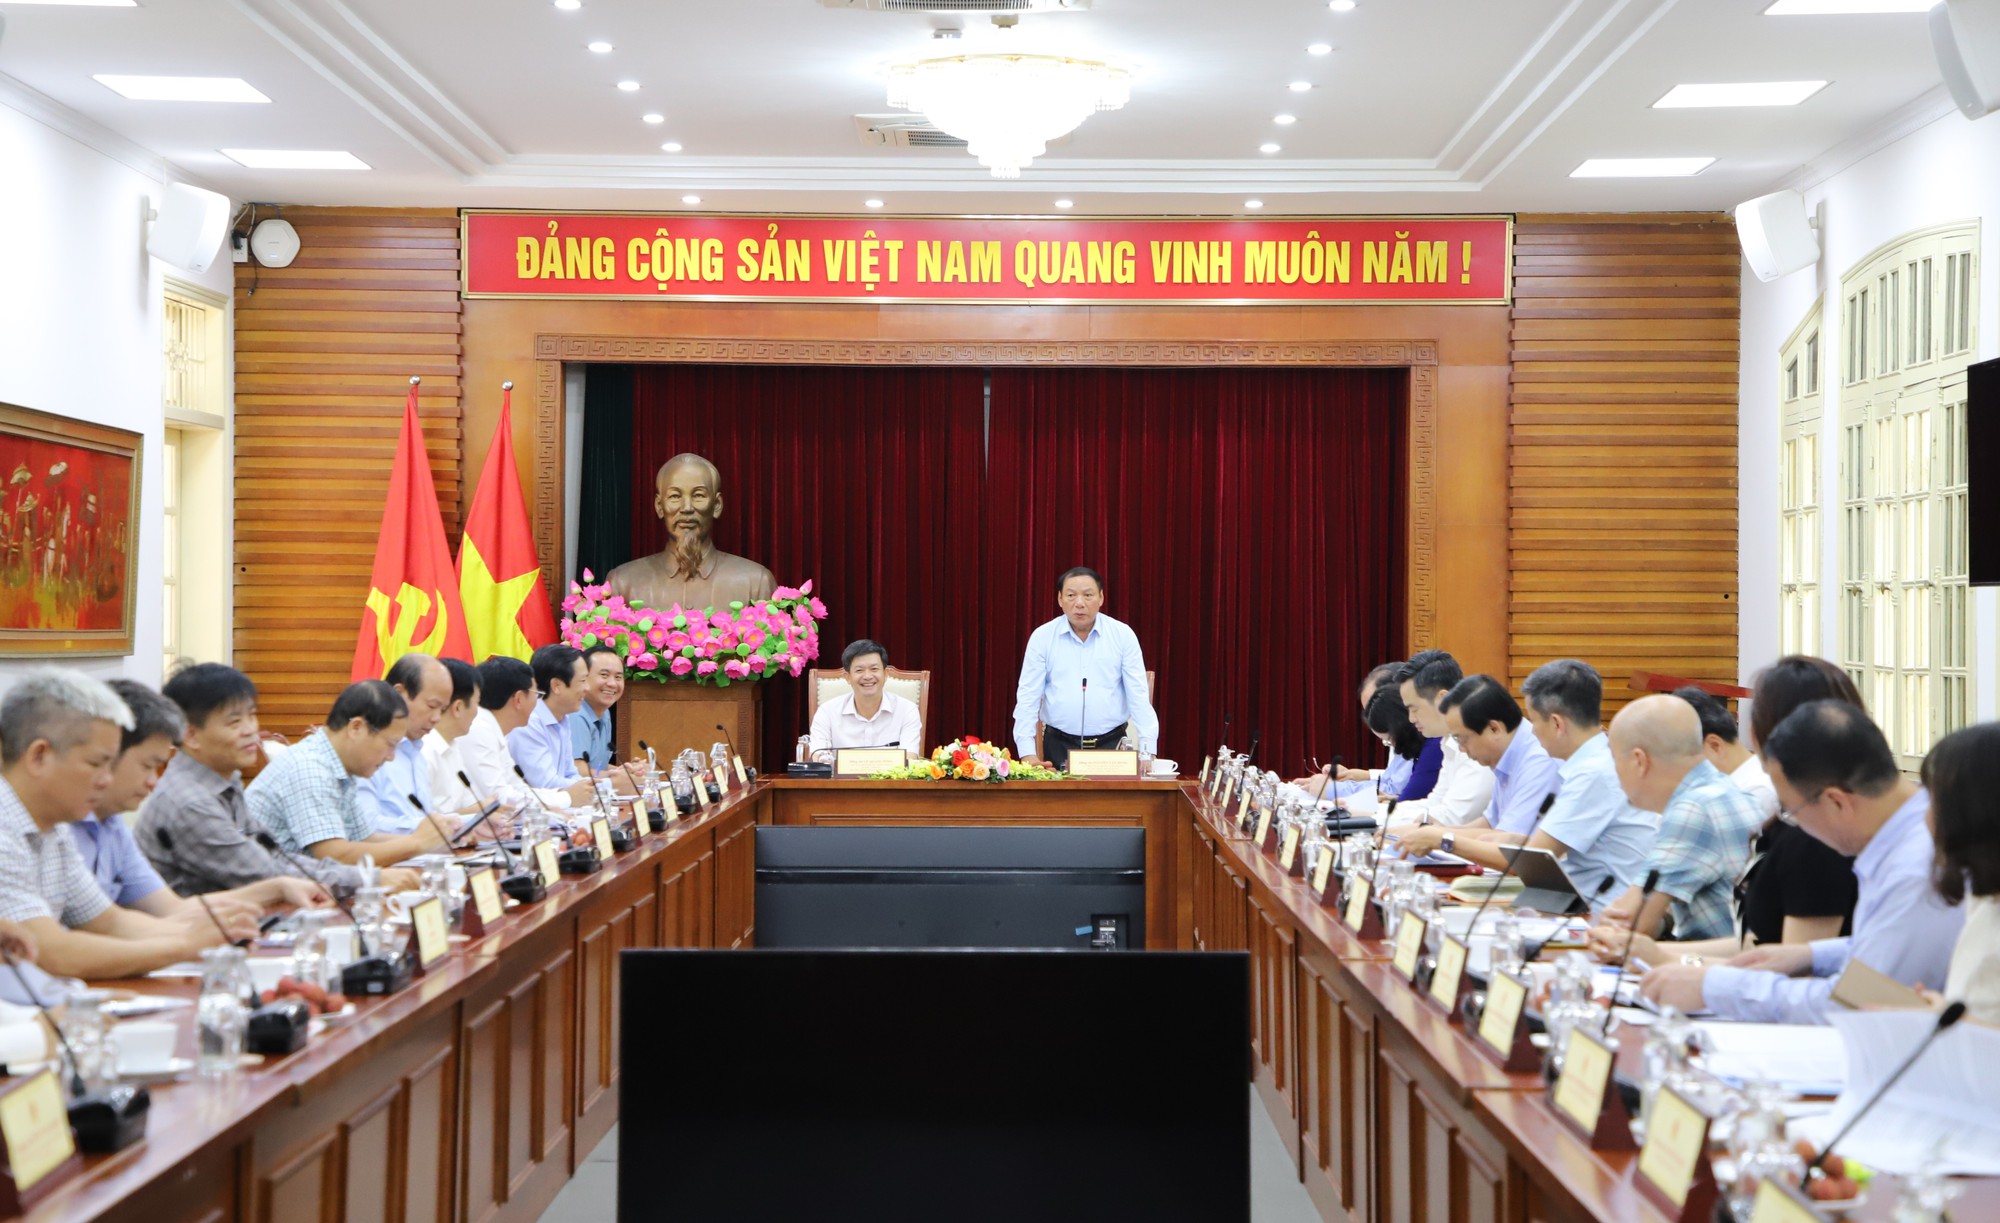 Bộ trưởng Nguyễn Văn Hùng: Nhân lên sức mạnh từ văn hóa và bằng văn hóa để phát triển tỉnh Quảng Trị - Ảnh 1.